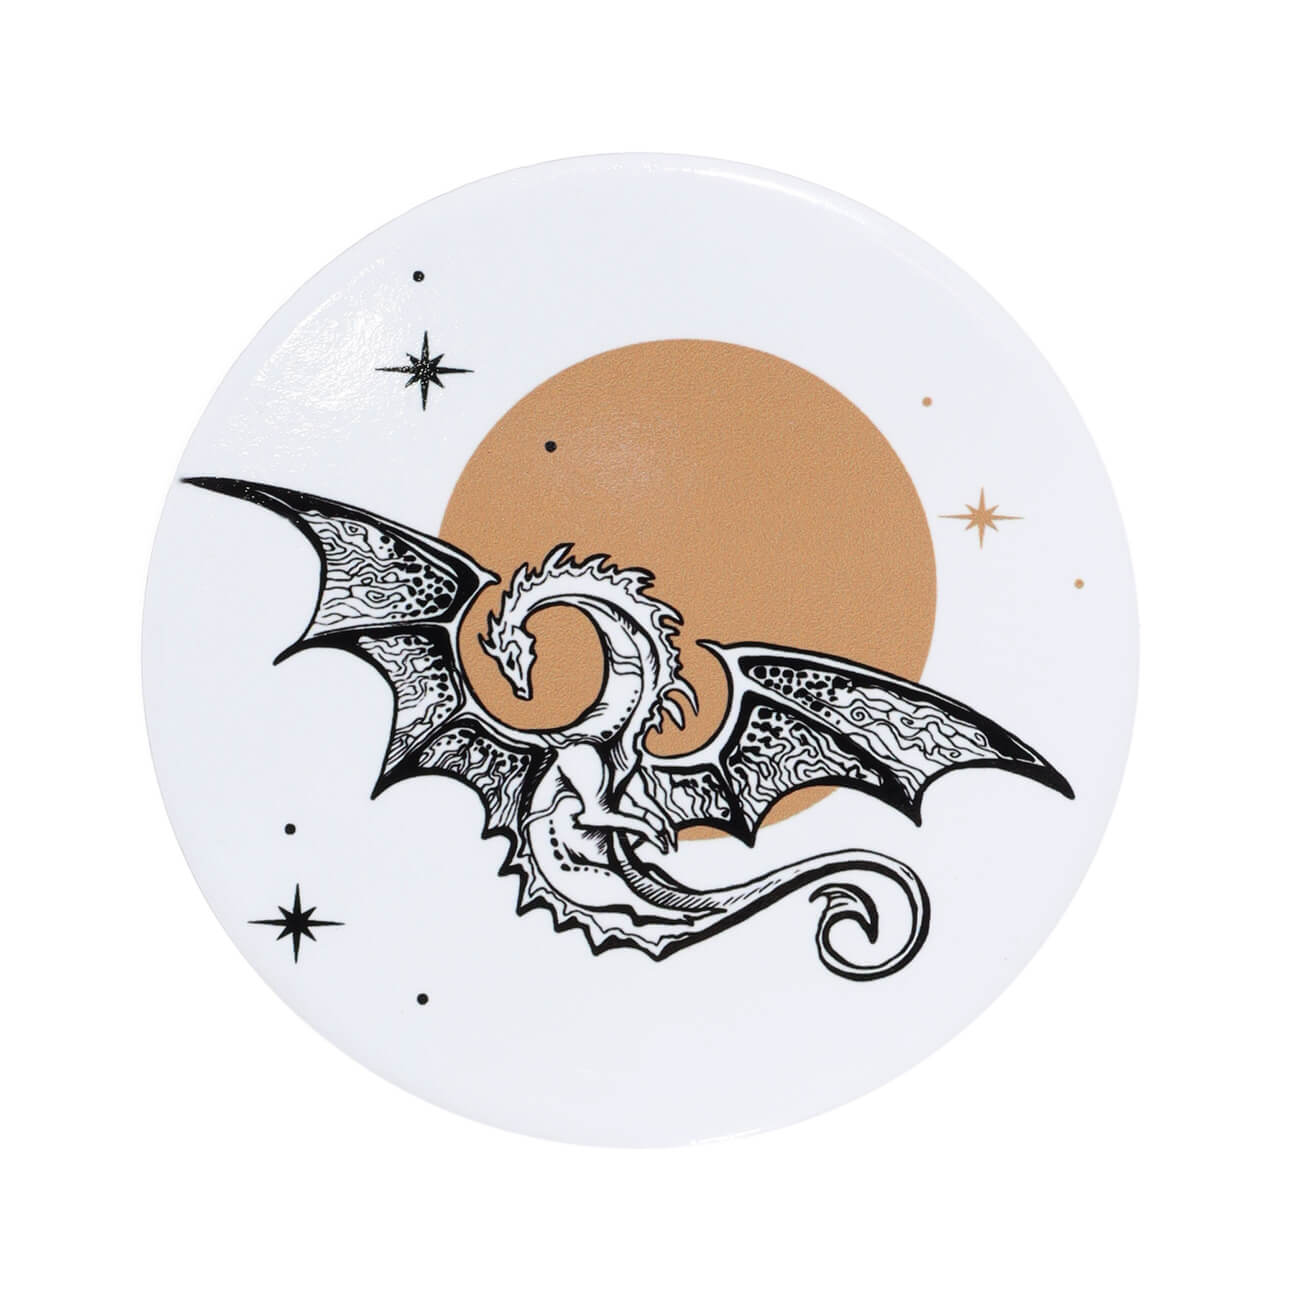 Подставка под кружку, 11 см, керамика/пробка, круглая, Дракон и звездное небо, Dragon rainira подставка под кружку